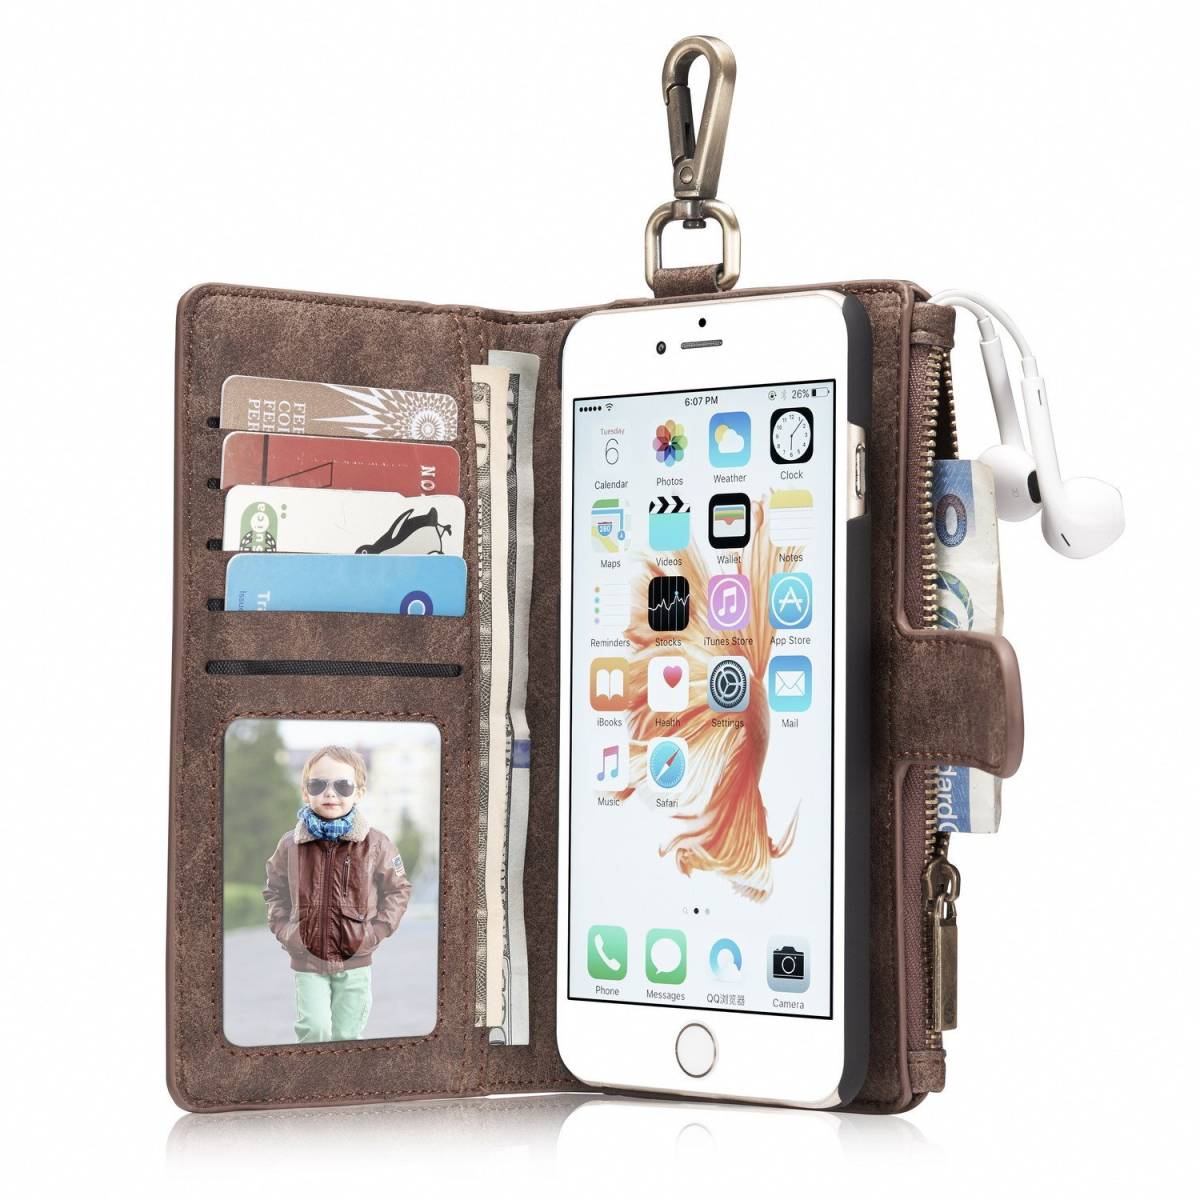 iphone6s レザーケース アイフォン6s ケース iphone6/6s レザーケース 手帳型 お財布付き 取り外し可能 カード収納 R2